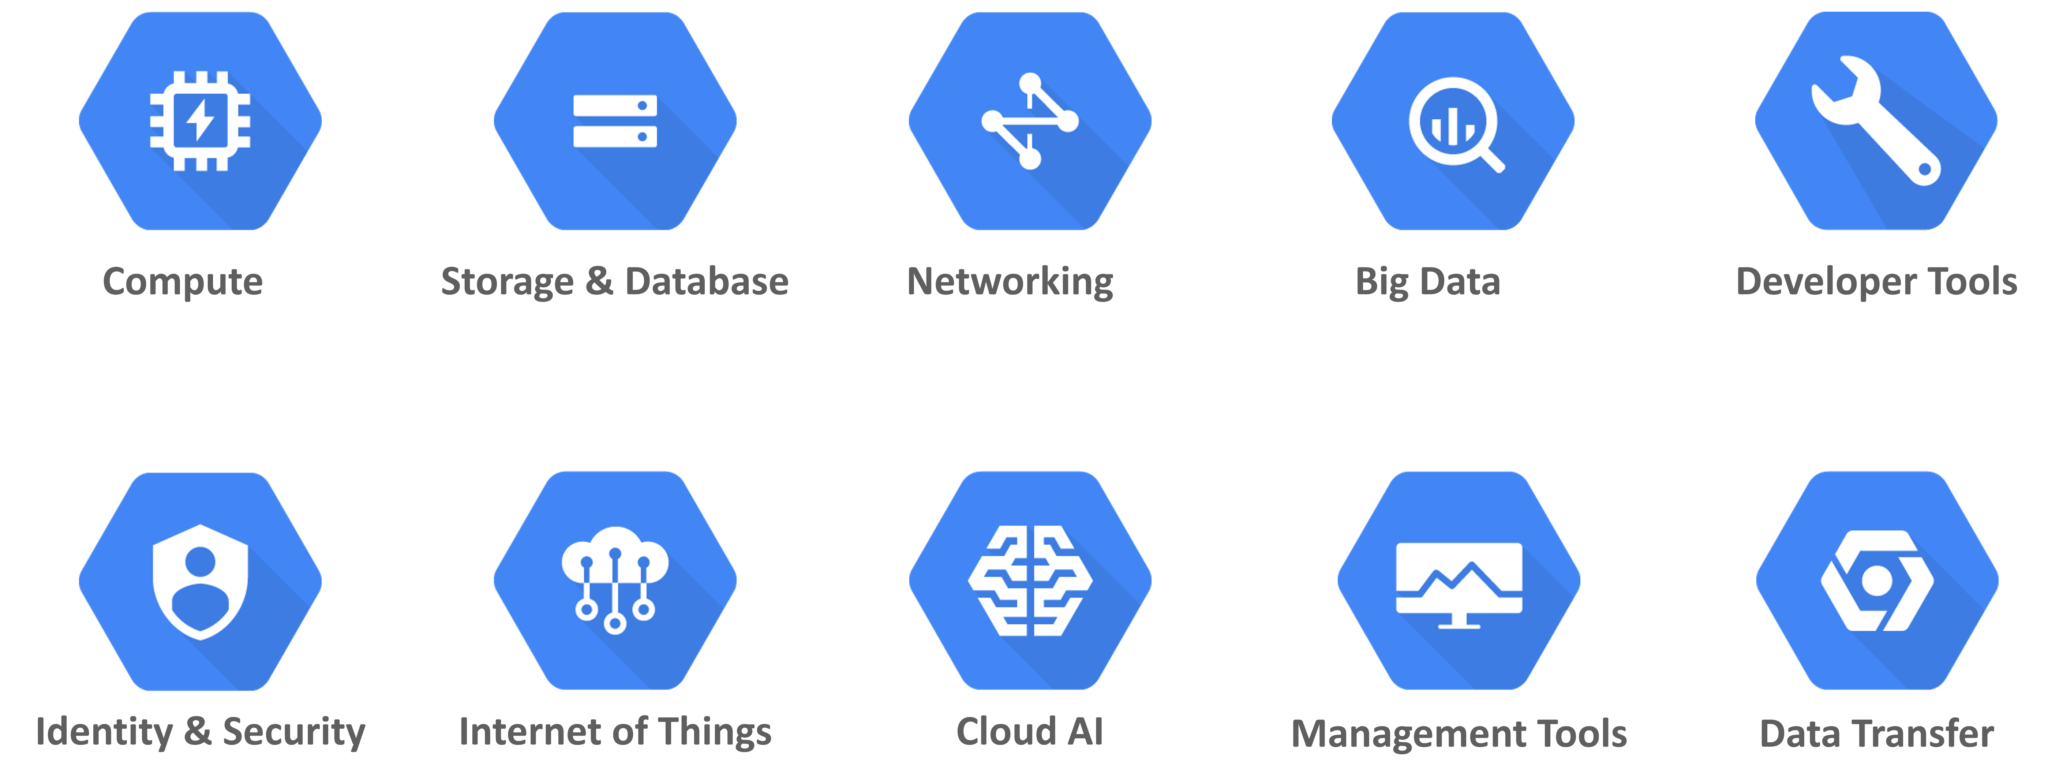 GCP Services - What is Google Cloud Platform - Edureka